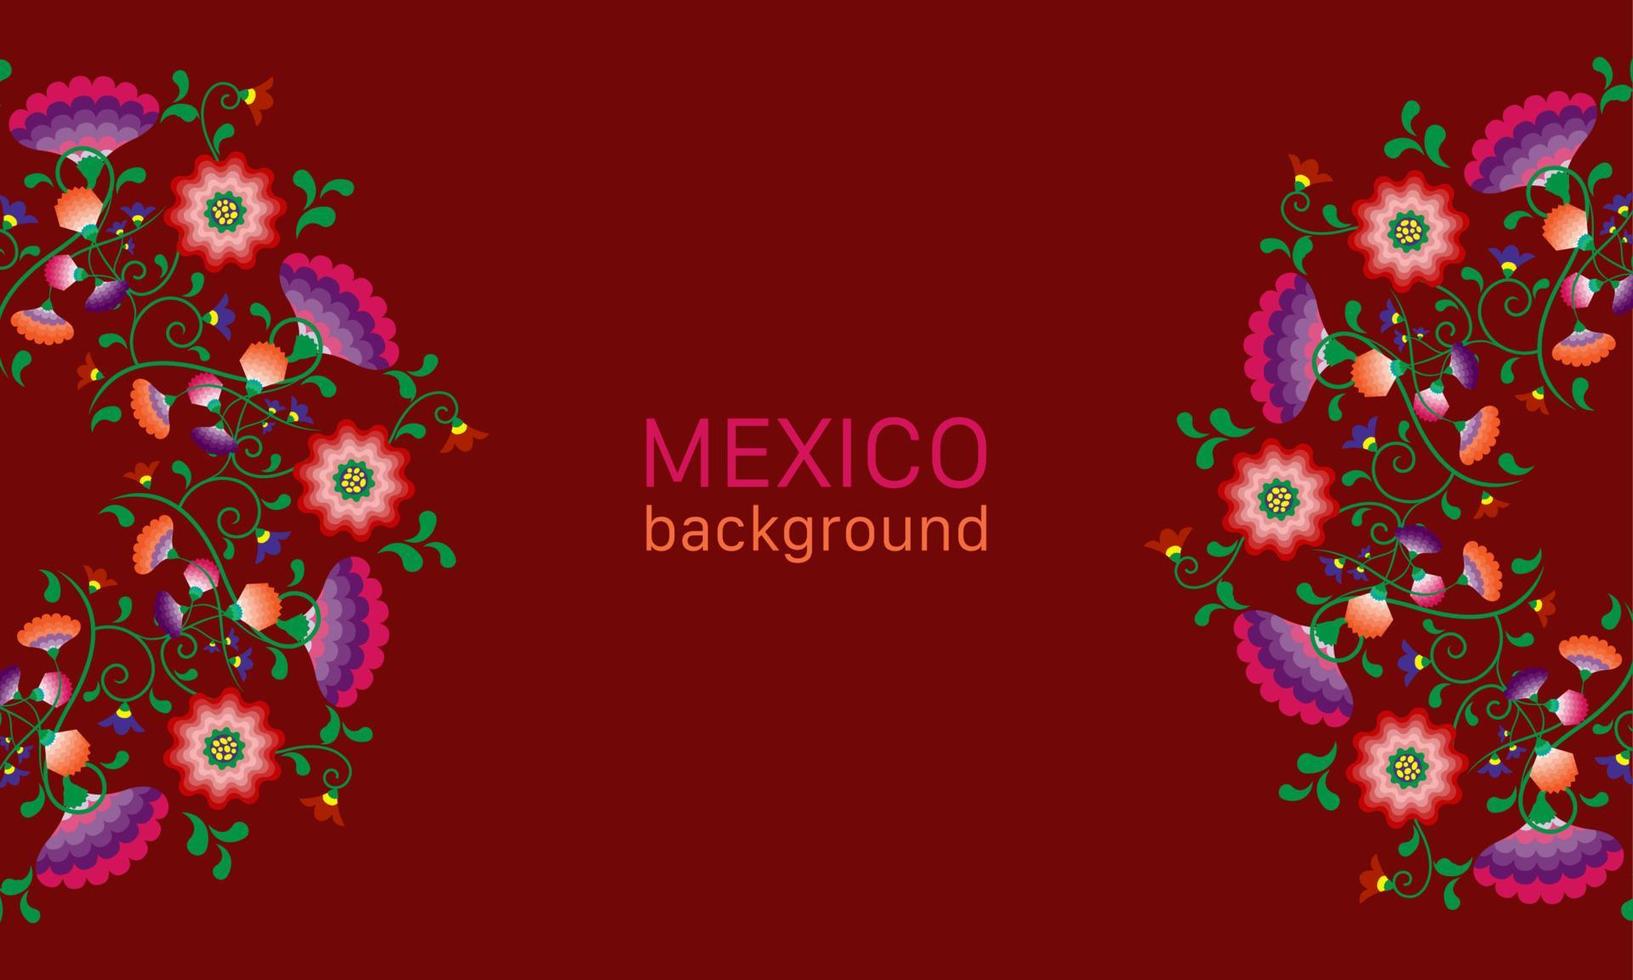 broderie de fleurs indigènes motif folklorique avec influence polonaise et mexicaine. tendance ethnique décorative traditionnelle florale au design symétrique, pour la mode, l'intérieur, la papeterie. vecteur isolé sur rouge